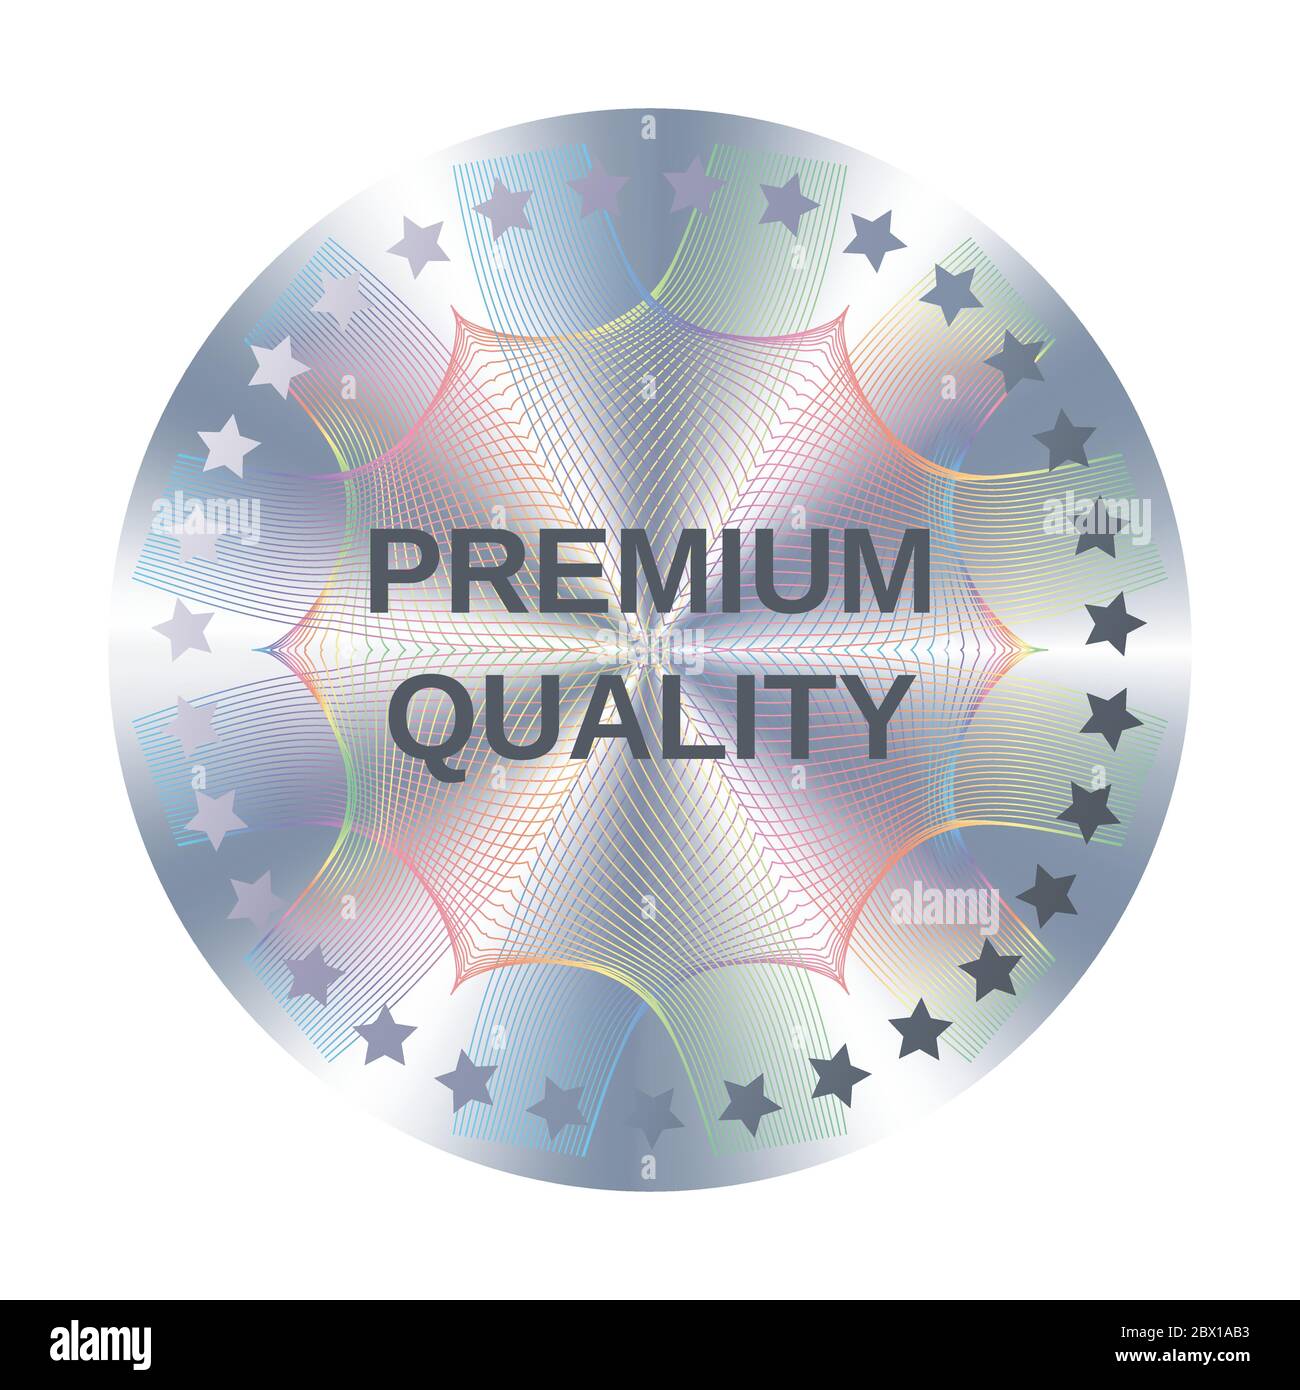 Runder Hologramm-Aufkleber in Premium-Qualität für das Etikettendesign.  Silber Vektor Element mit Stern Metallic Premium Qualität  Stock-Vektorgrafik - Alamy